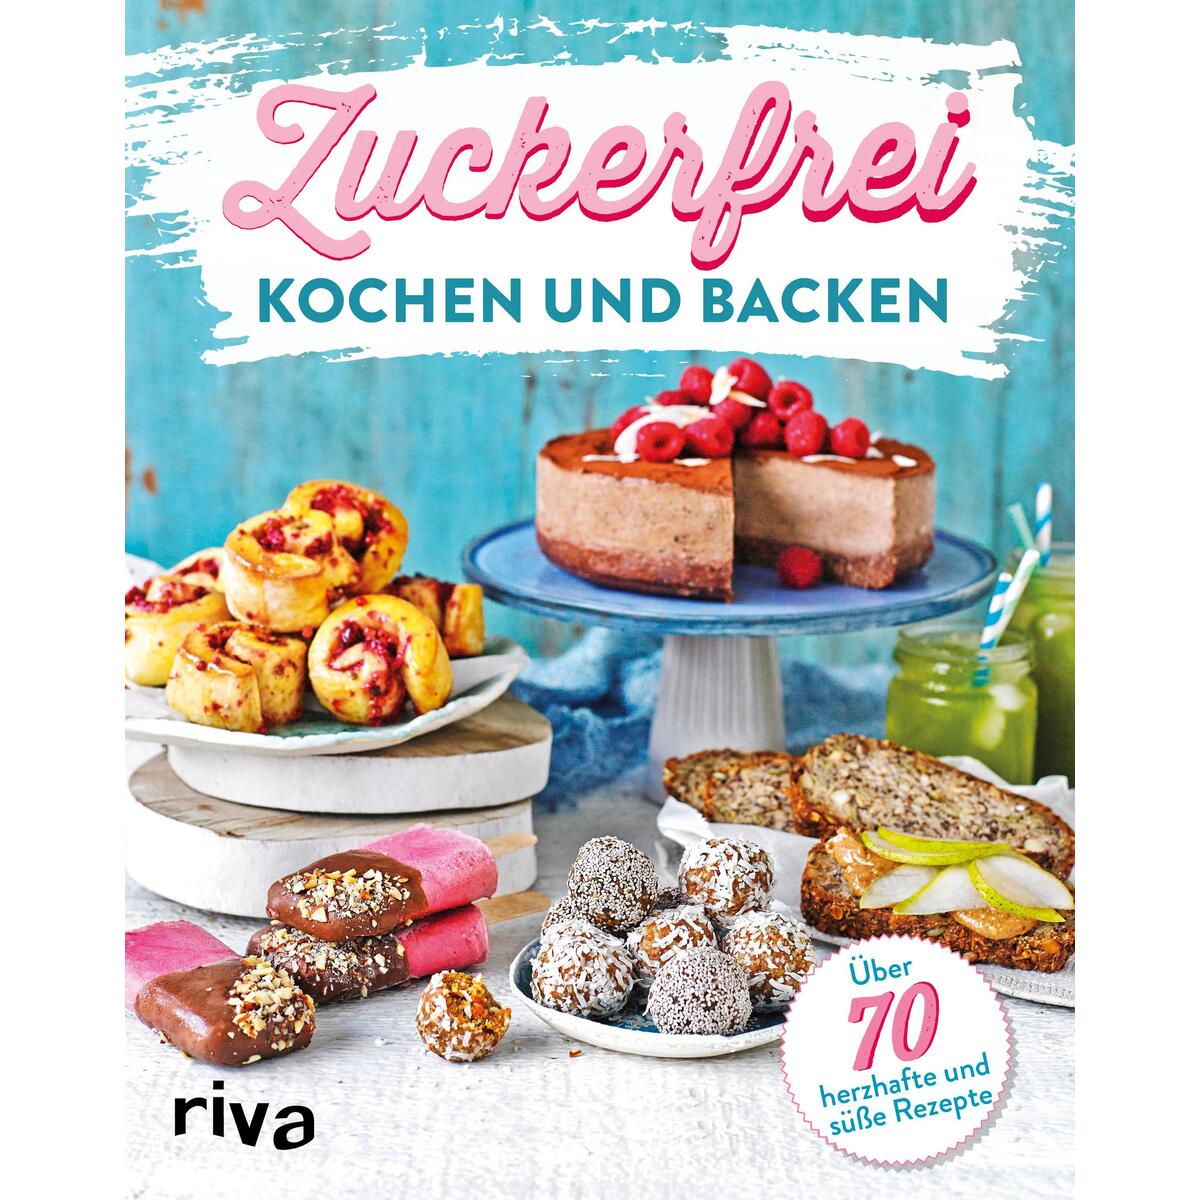 Zuckerfrei kochen und backen von riva Verlag